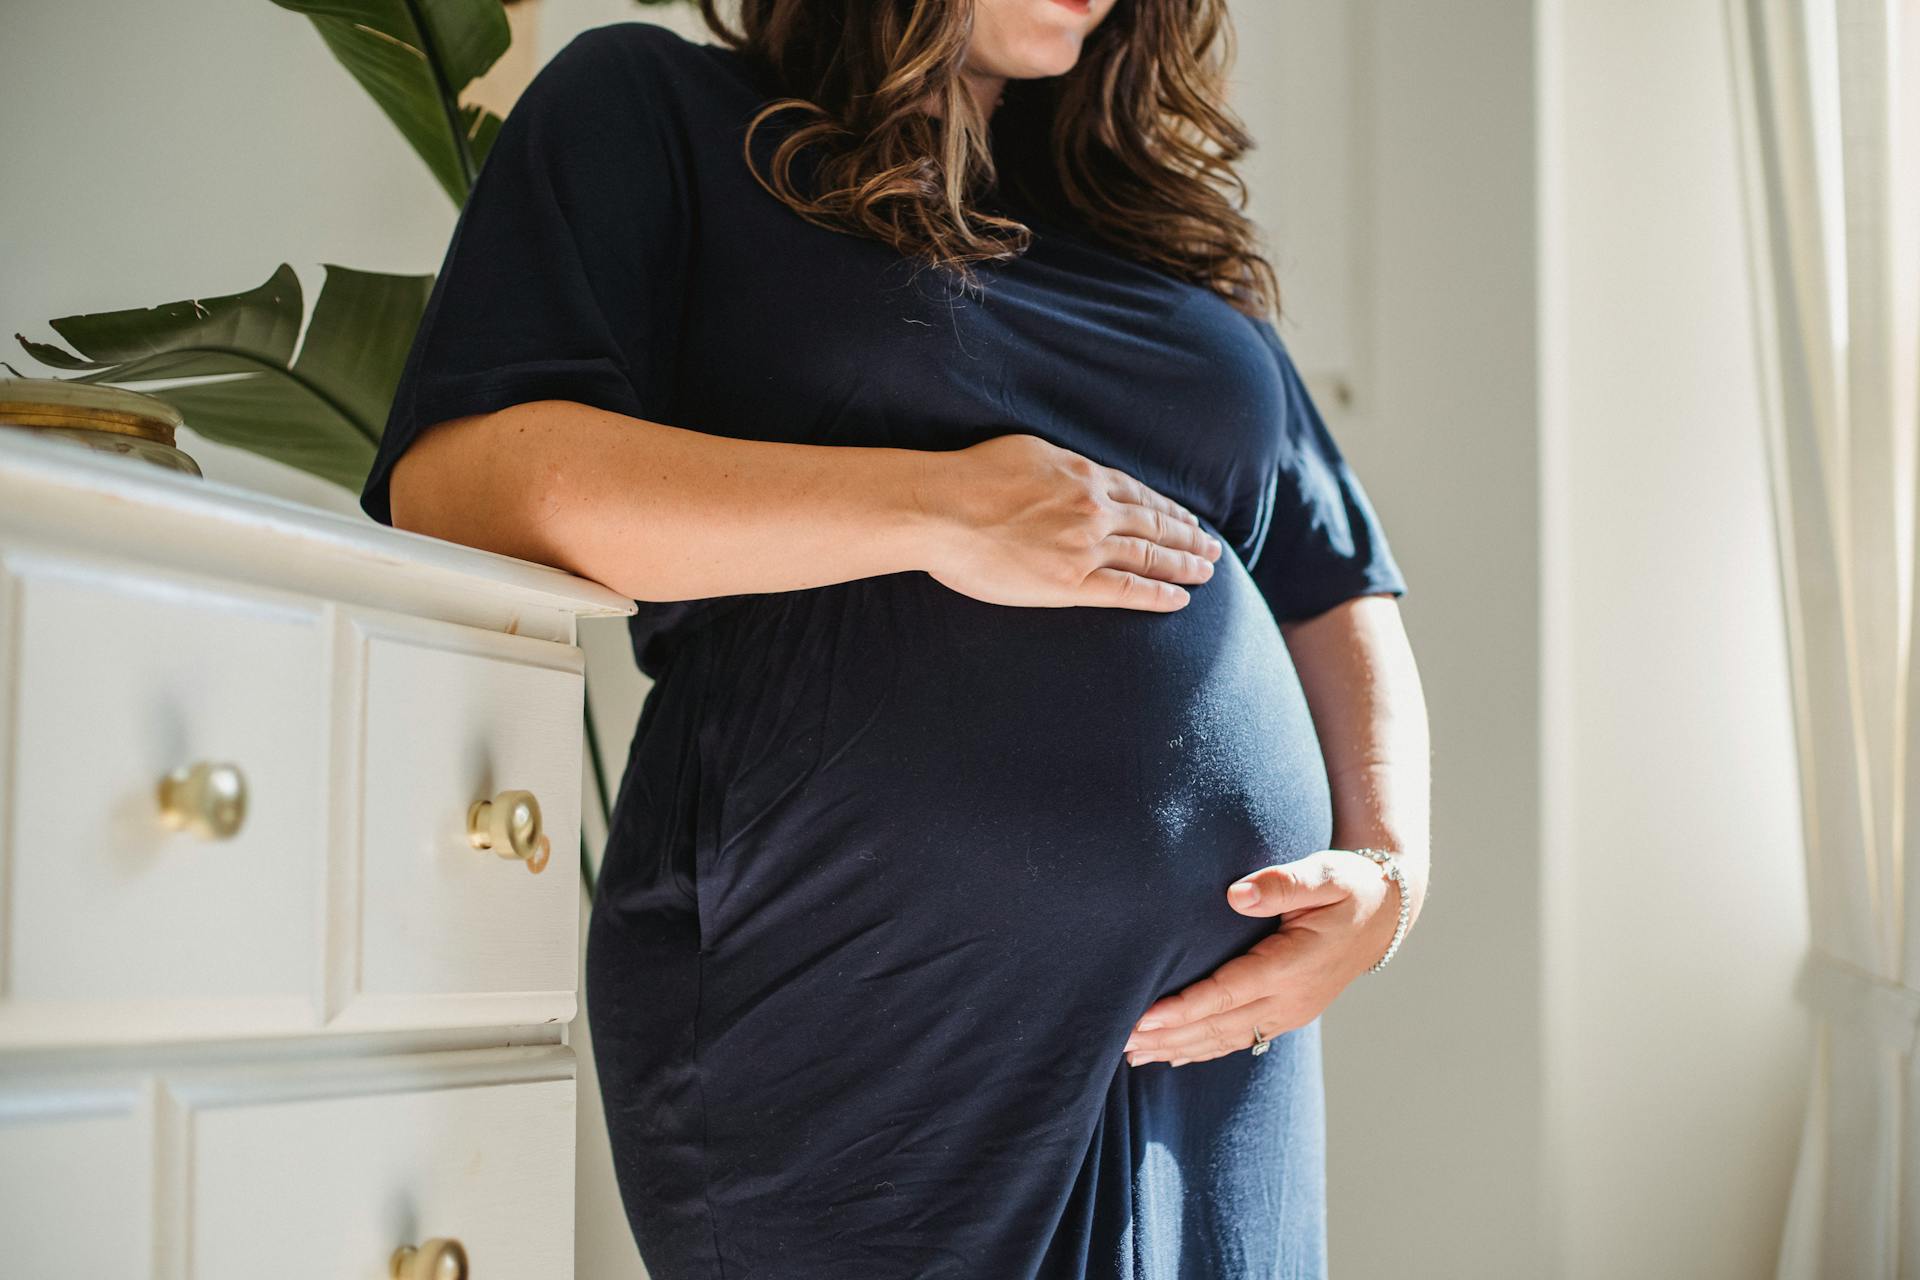 A pregnant woman | Source: Pexels